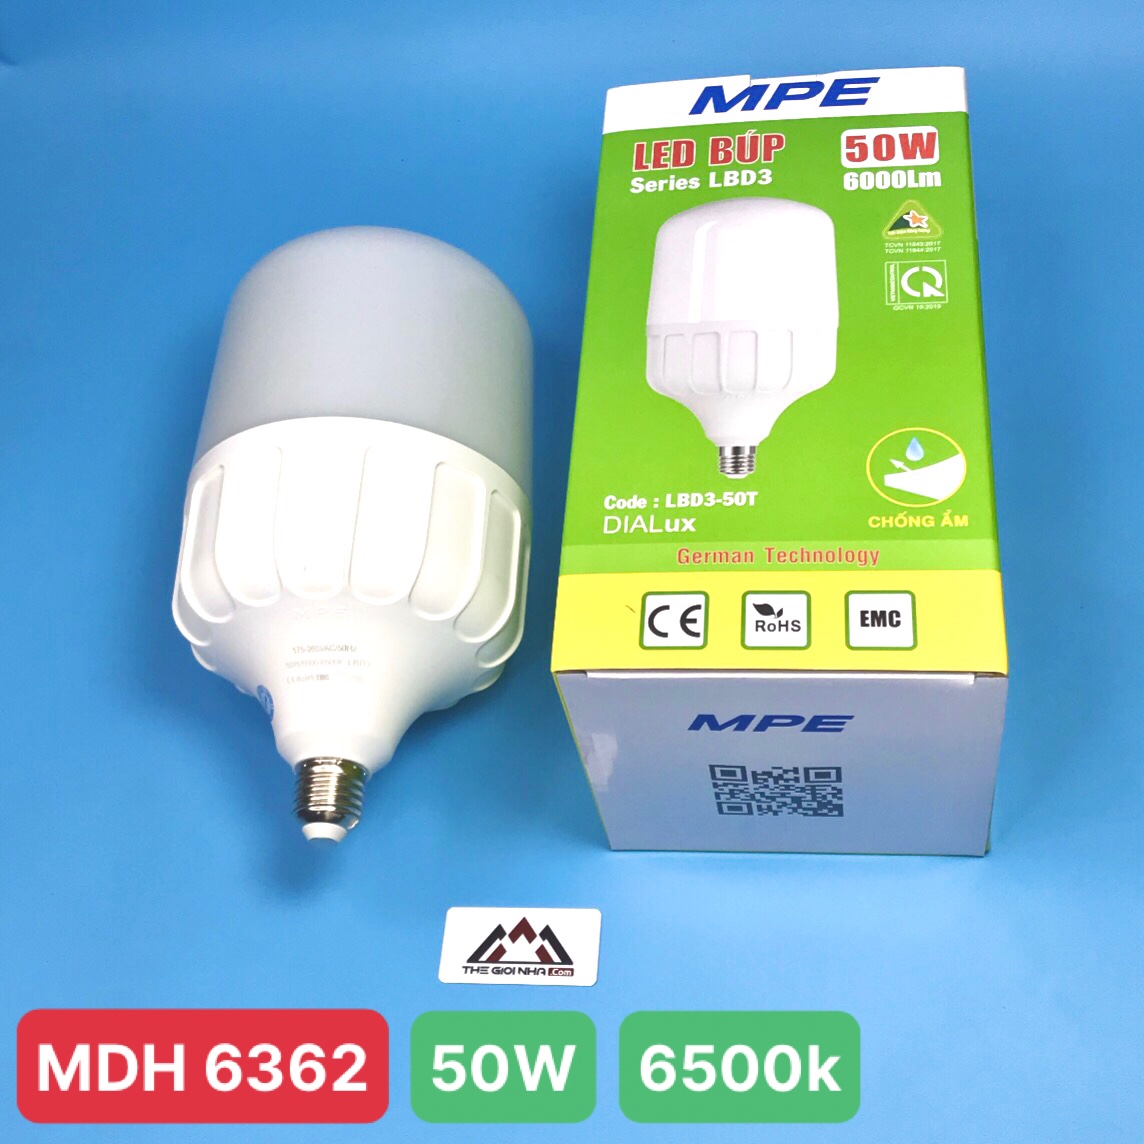 Đèn led Bulb chống ẩm 50W MPE, 138X260 mm - LBD3-50T ánh sáng trắng